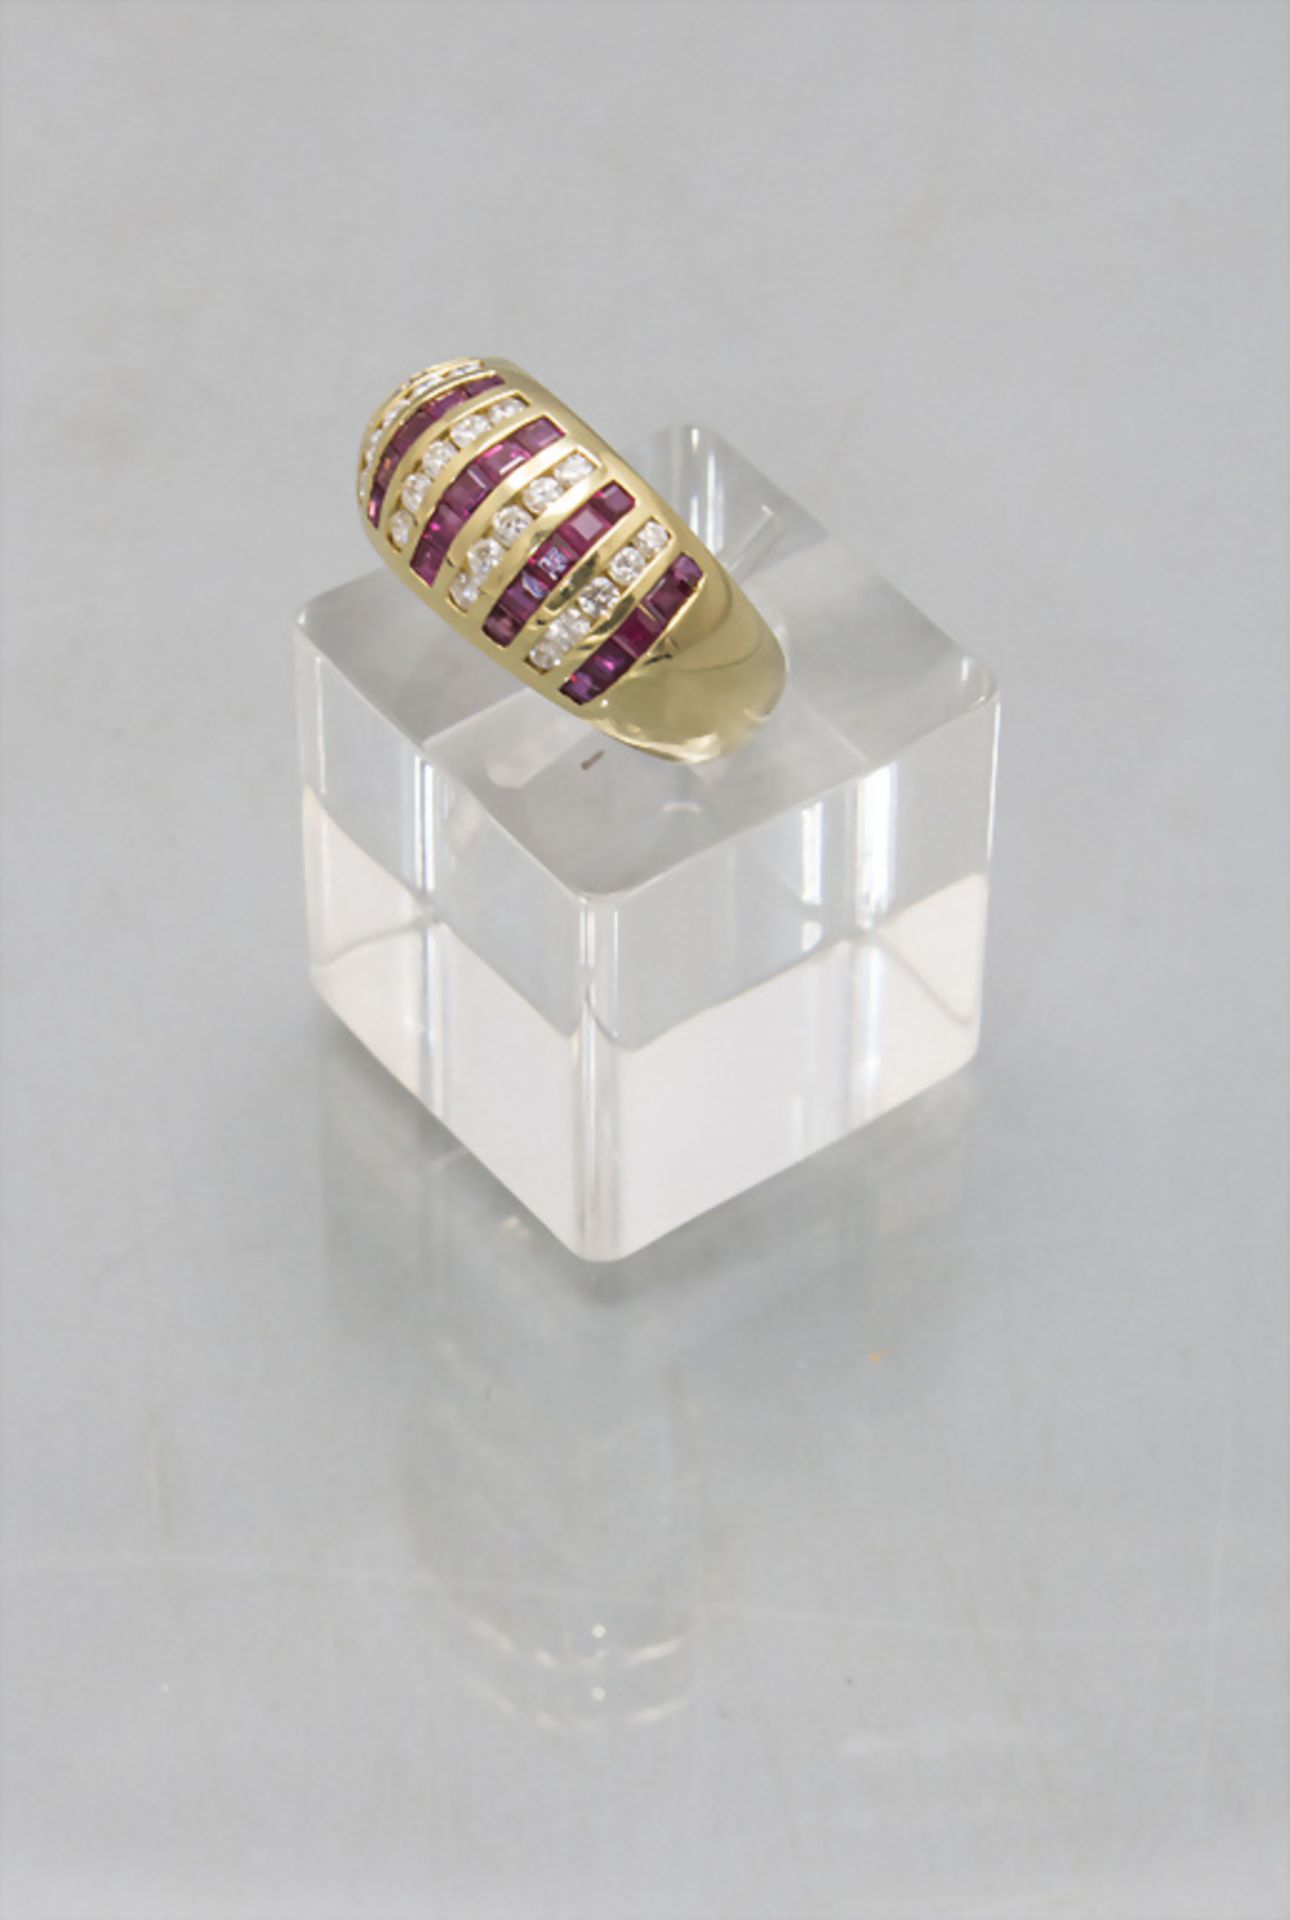 Damenring mit Diamanten und Rubinen / An 18 ct ladies gold ring with diamonds and rubies - Bild 2 aus 3